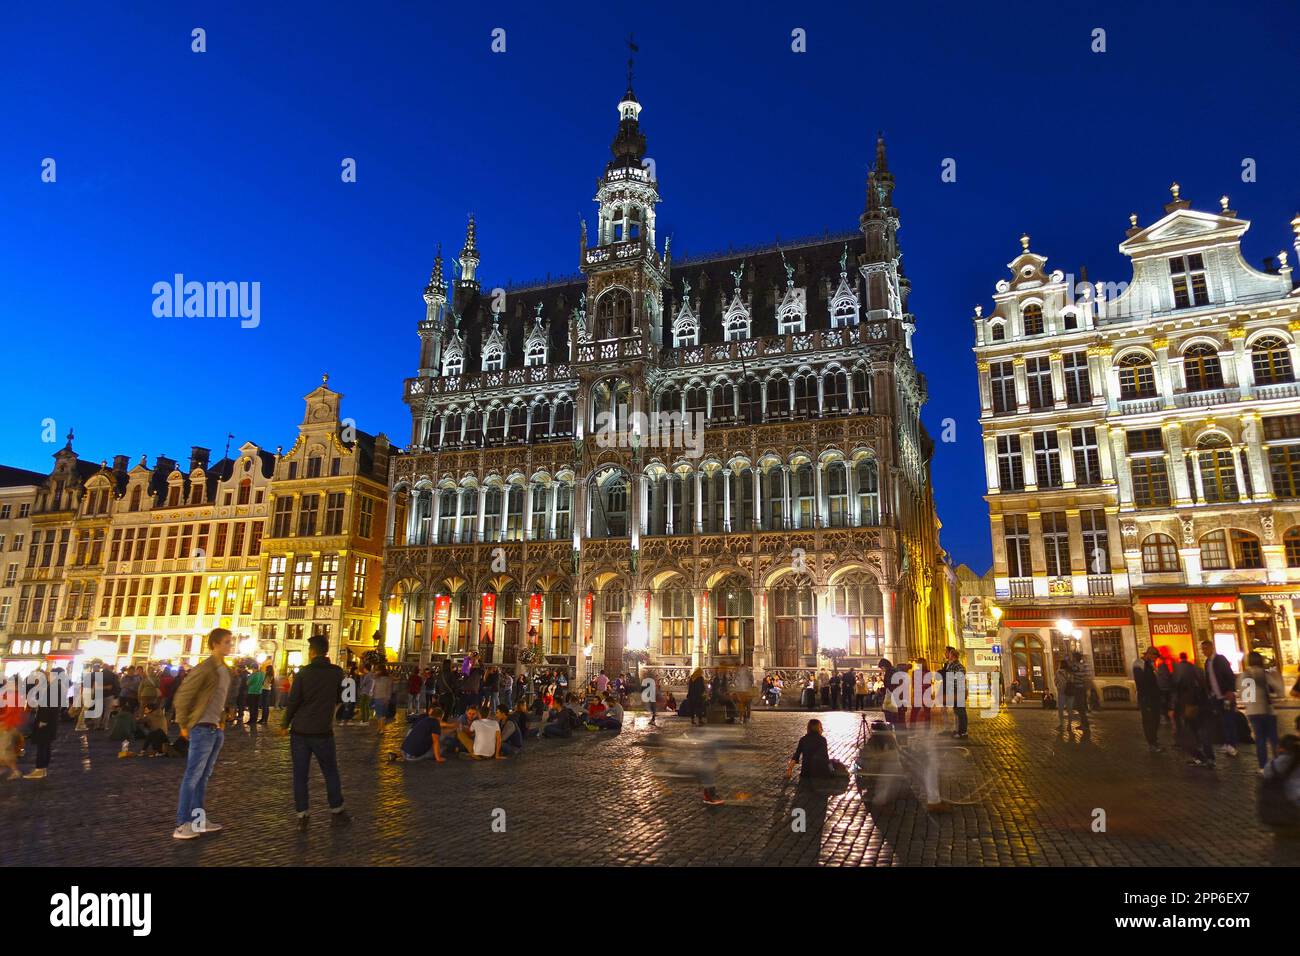 BRUXELLES, BELGIO - 4 AGOSTO 2016: La piazza medievale della città Grand Place o Grote Markt di Bruxelles, patrimonio mondiale dell'UNESCO. Foto Stock